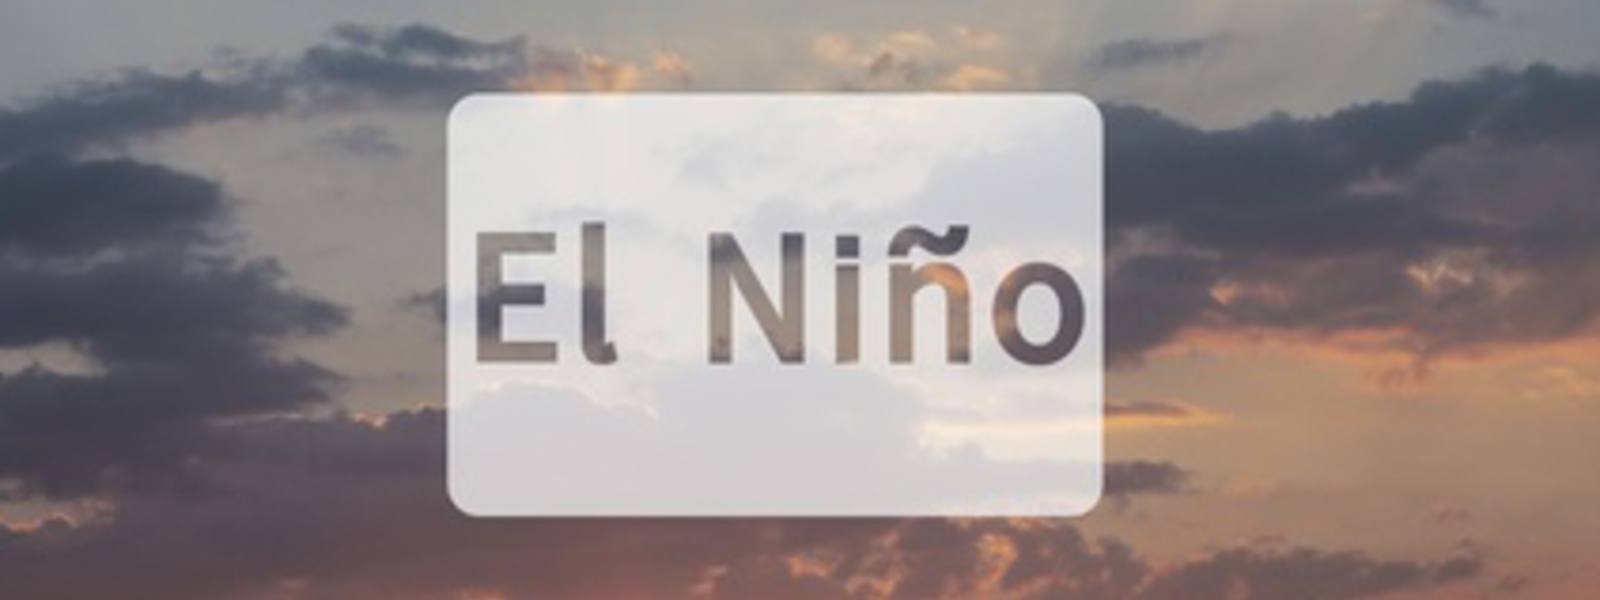 El Nino and Electricity